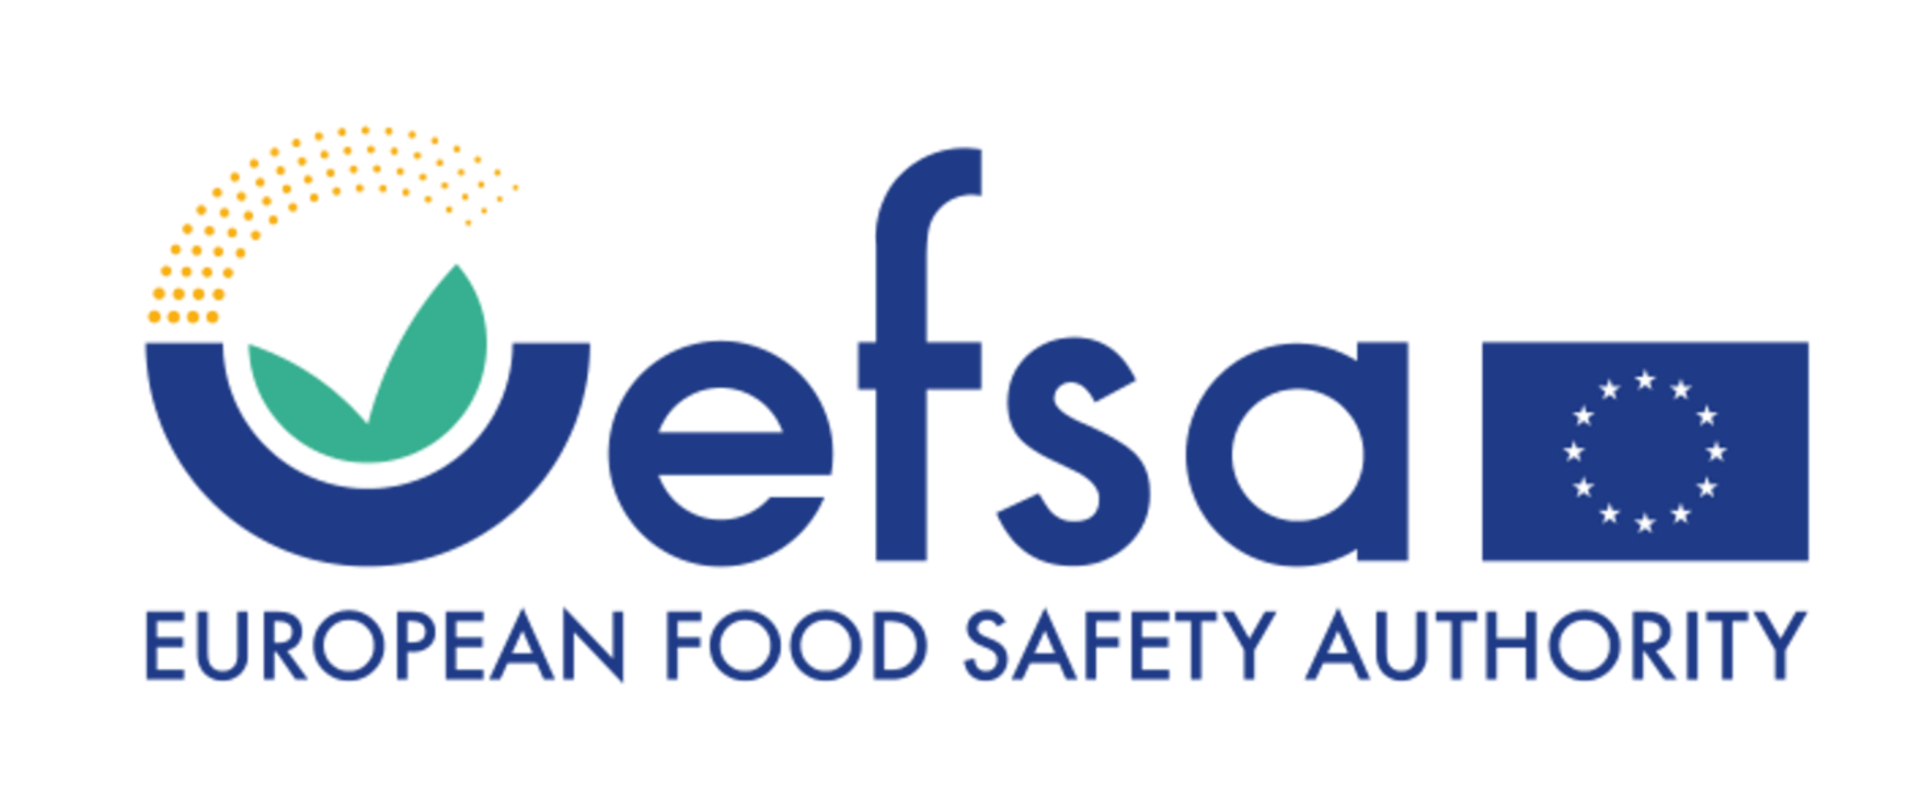 Niebieski napis uefsa i flaga unii europejskiej. Poniżej niebieski napis european food safety authority.